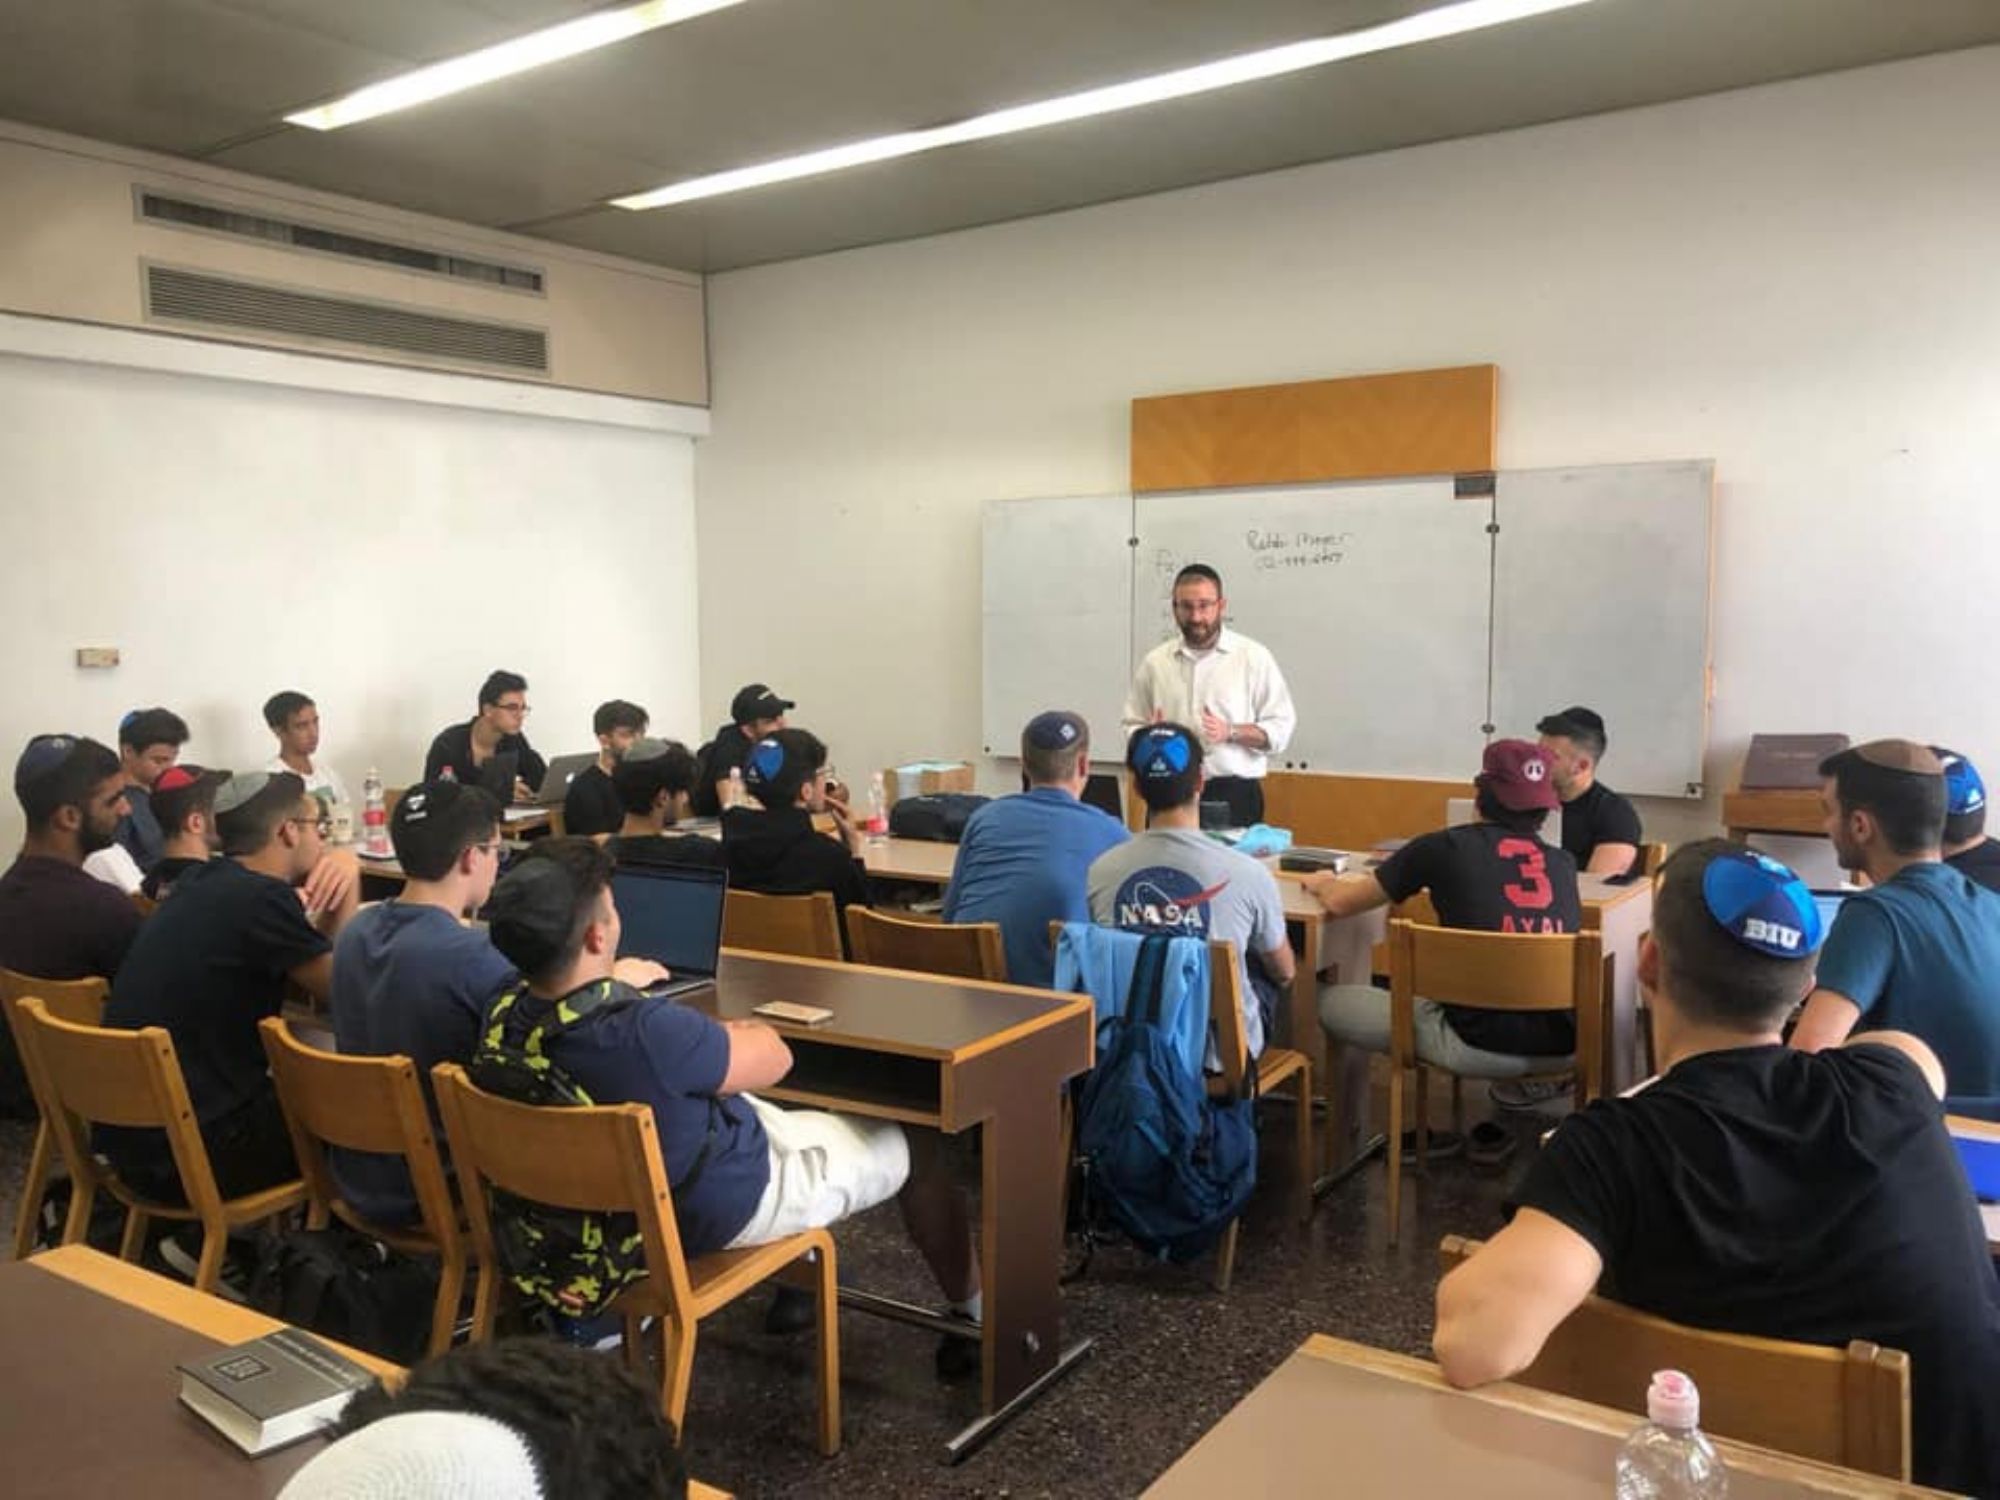 Israel XP at Bar-Ilan University